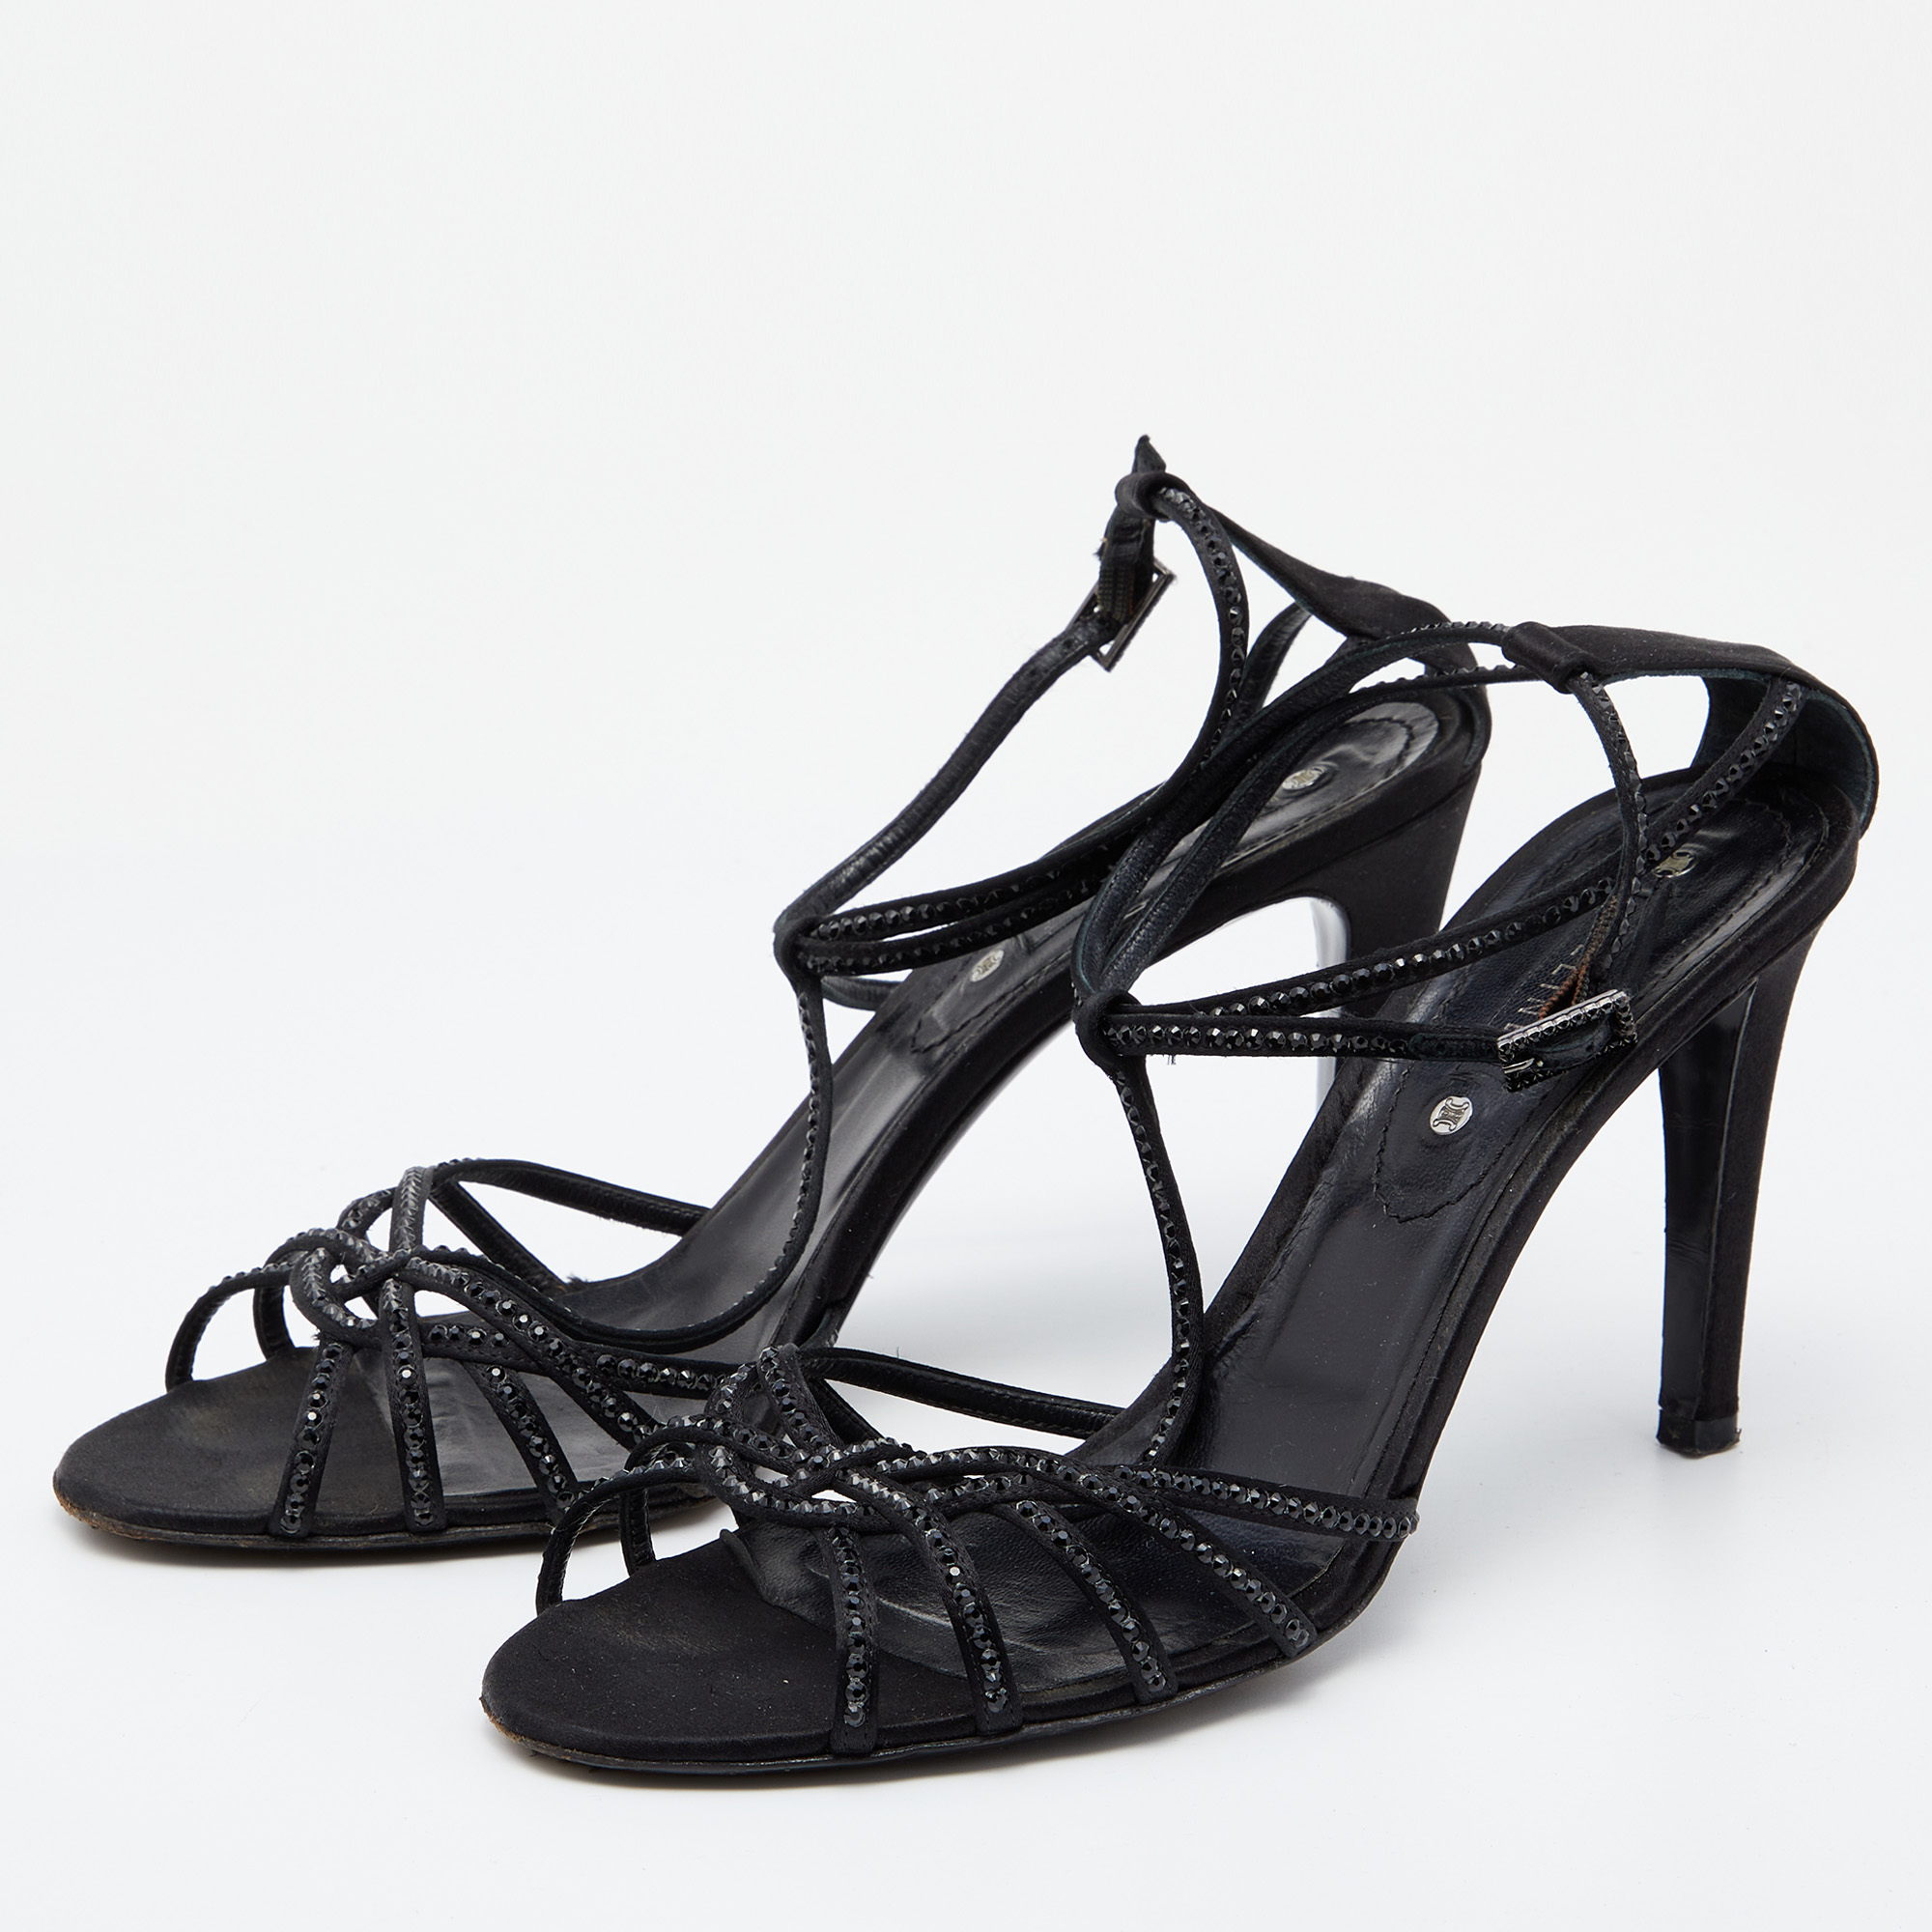 Celine Black Satin Embellished Strappy Sandals Size 41